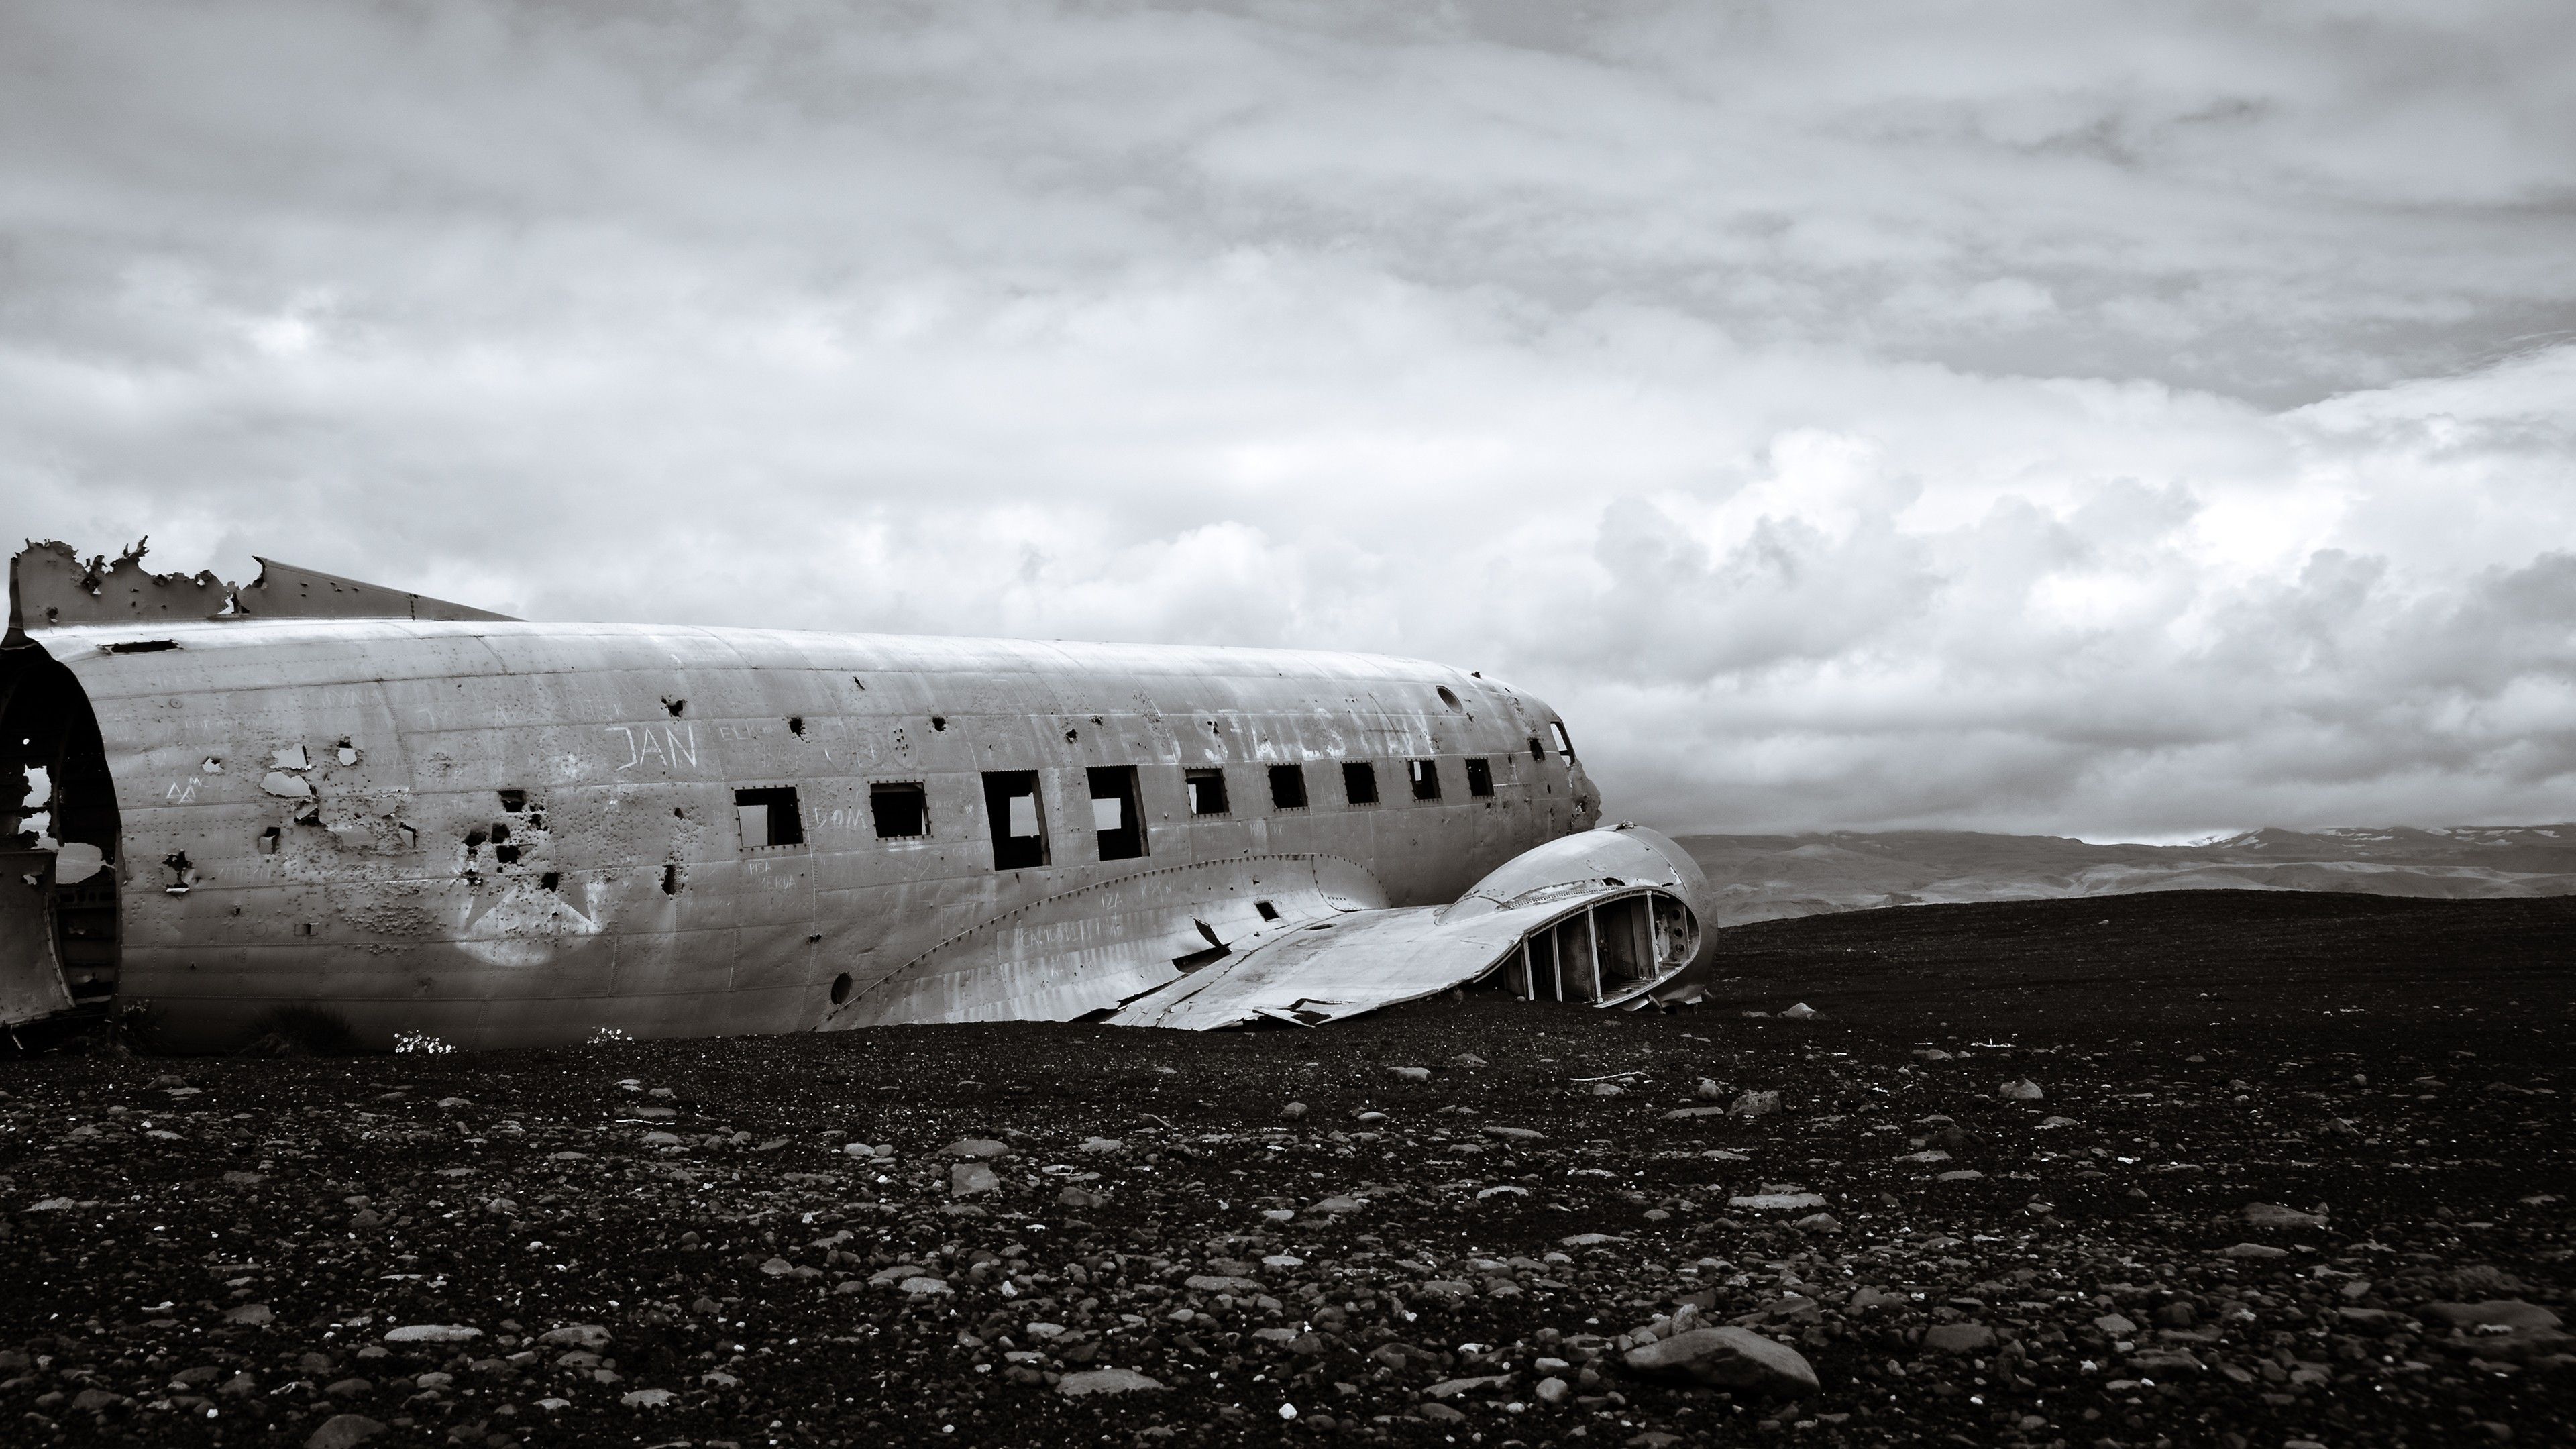 #Douglas DC- #landscape, #wreck, #airplane, #crash